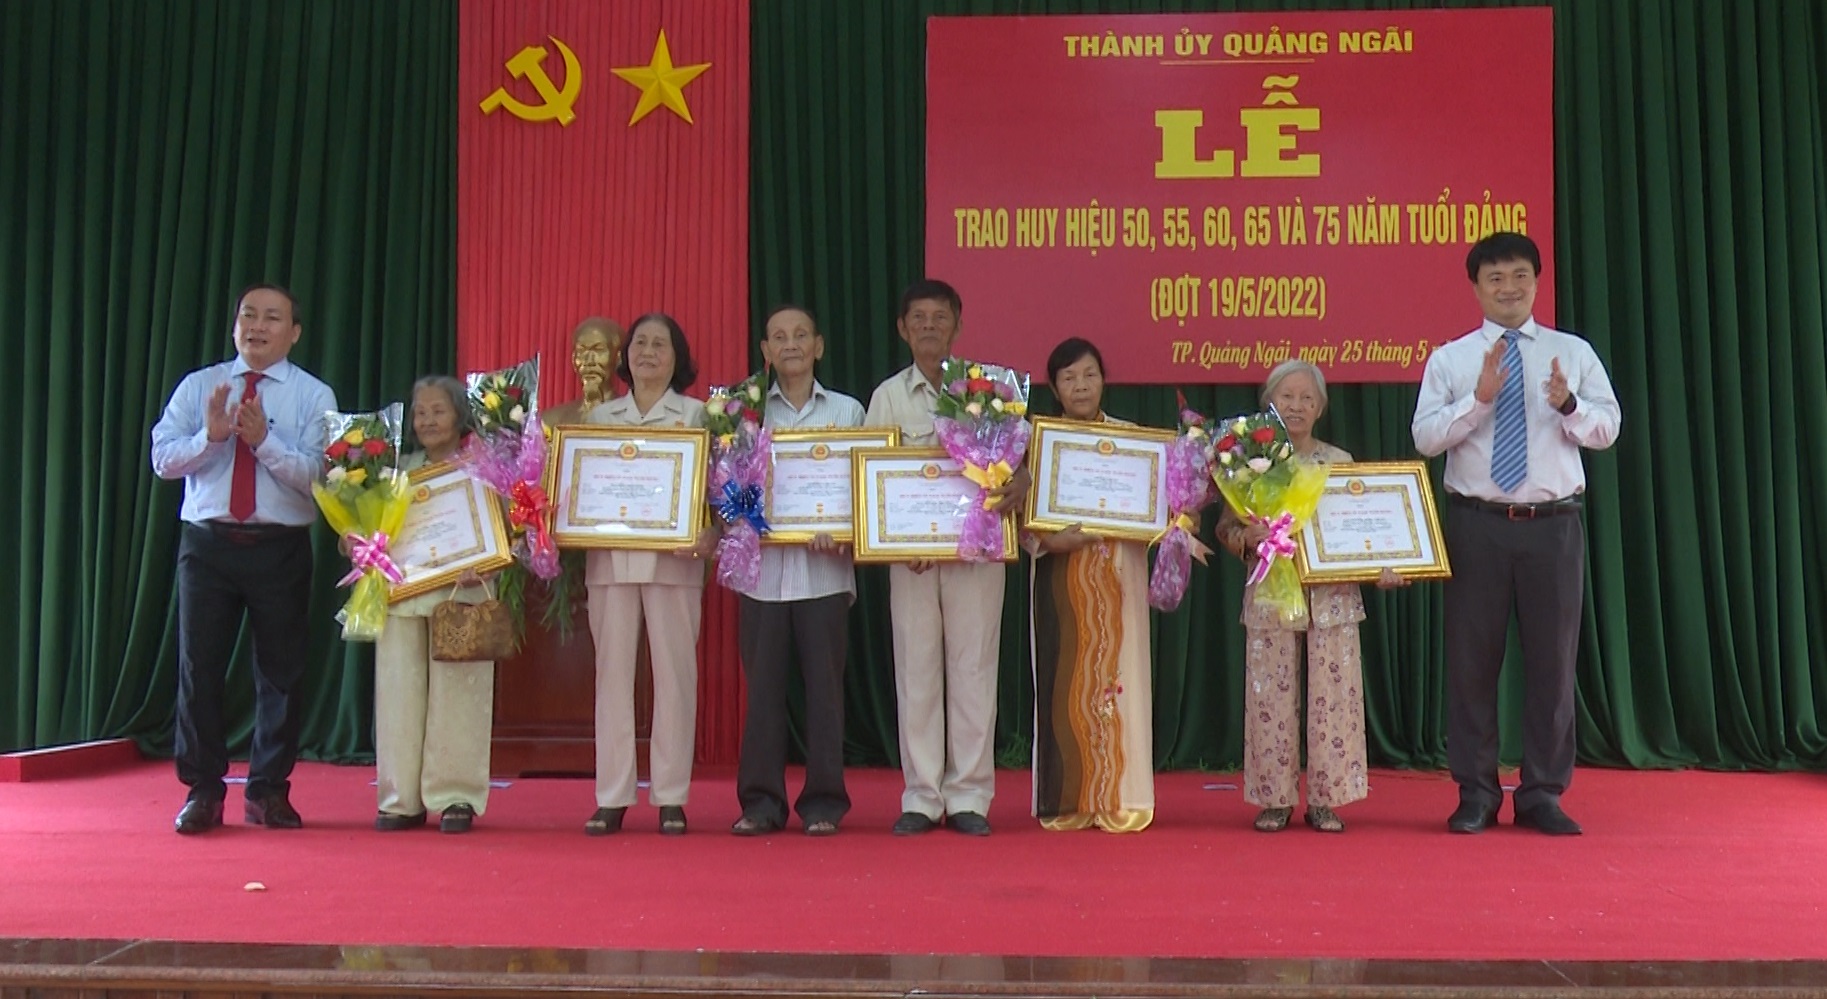 Thành ủy Quảng Ngãi tổ chức Lễ trao Huy hiệu Đảng cho đảng viên